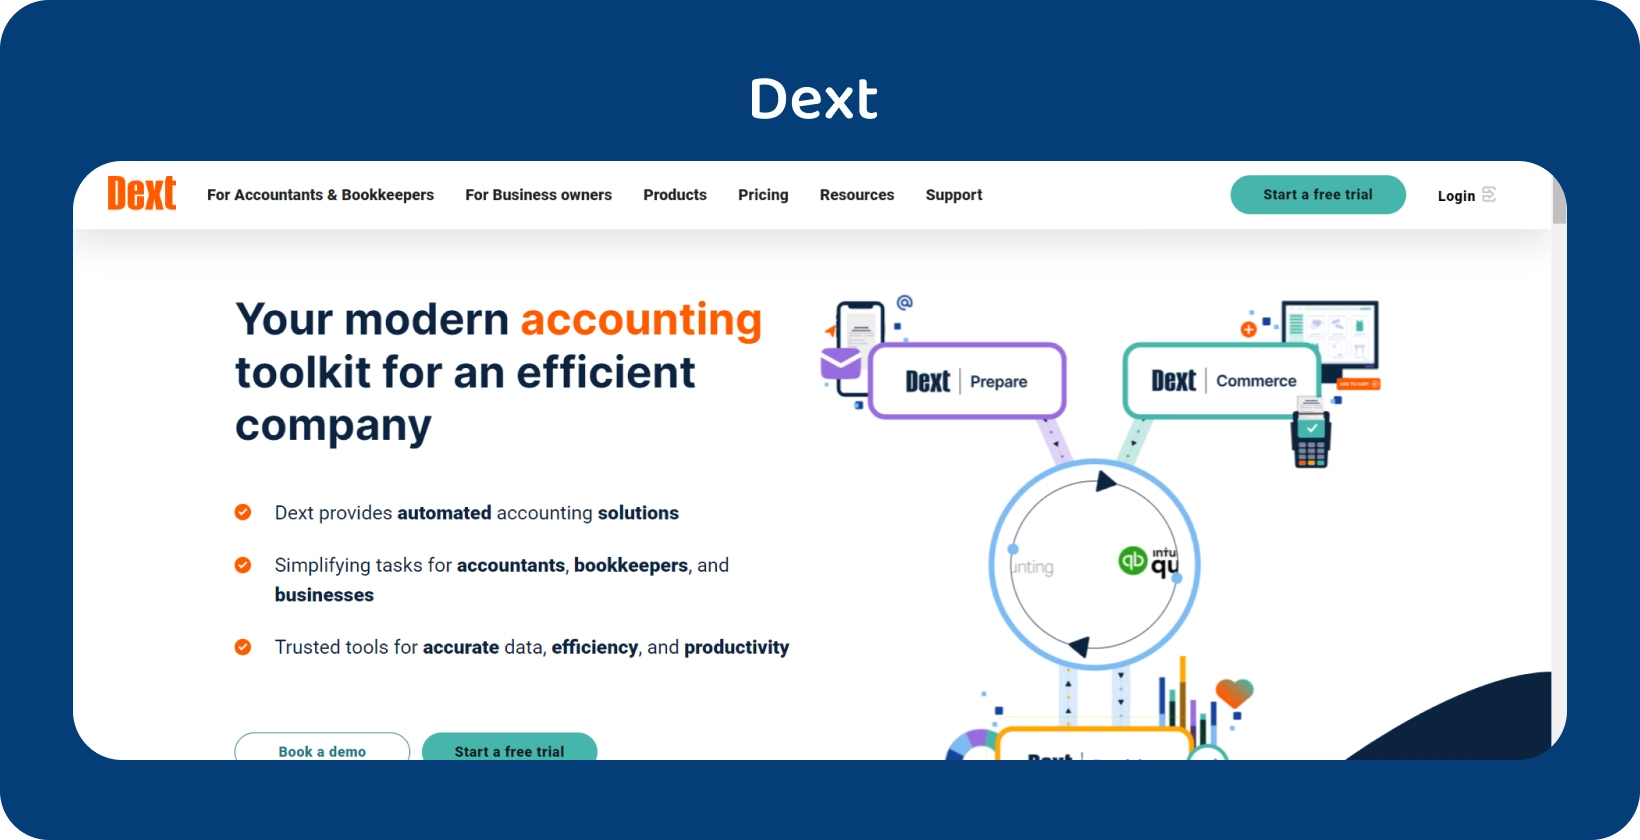 De geavanceerde interface van de boekhoudtoolkit van Dext belicht automatisering voor professionals in boekhouding en boekhouding.